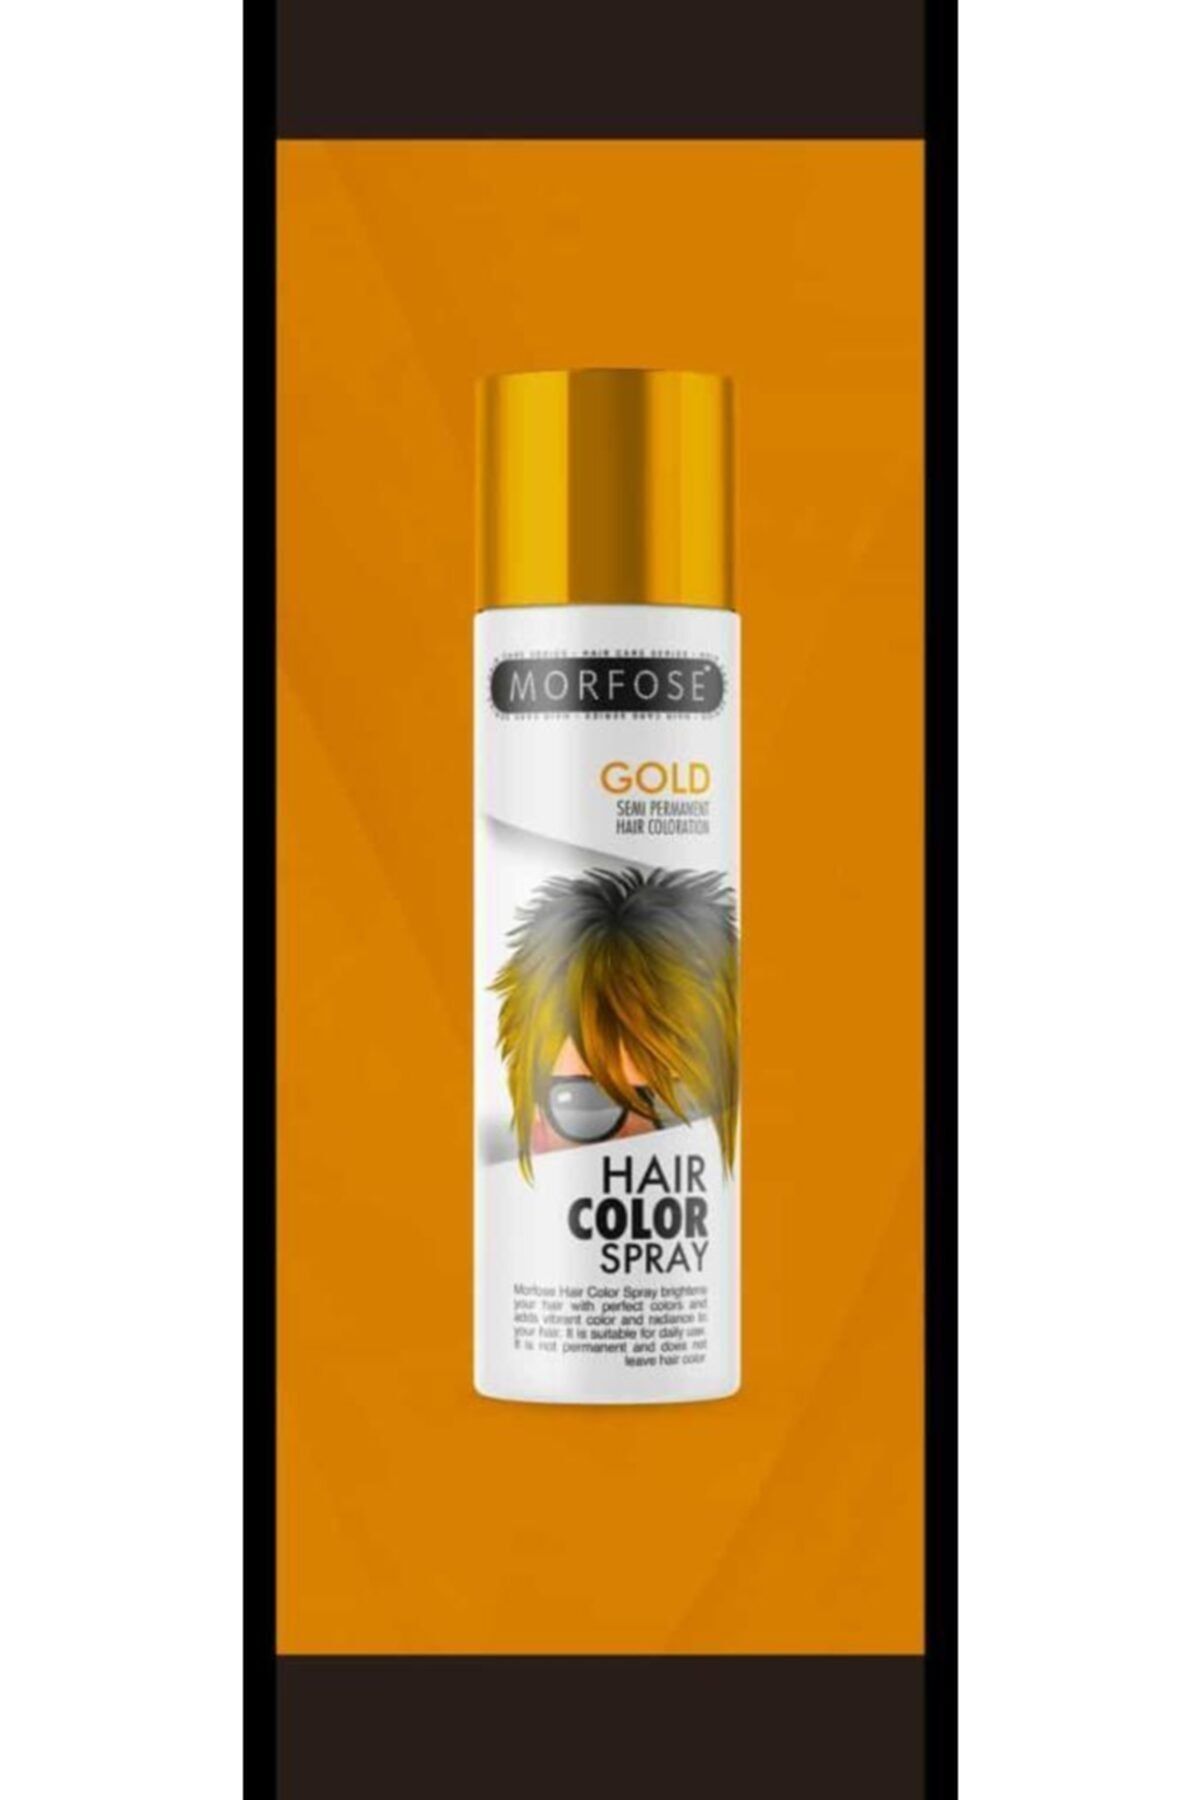 Morfose Marka: Dazzle Gold Hair Color Spray 150 Ml Kategori: Saç Boyası